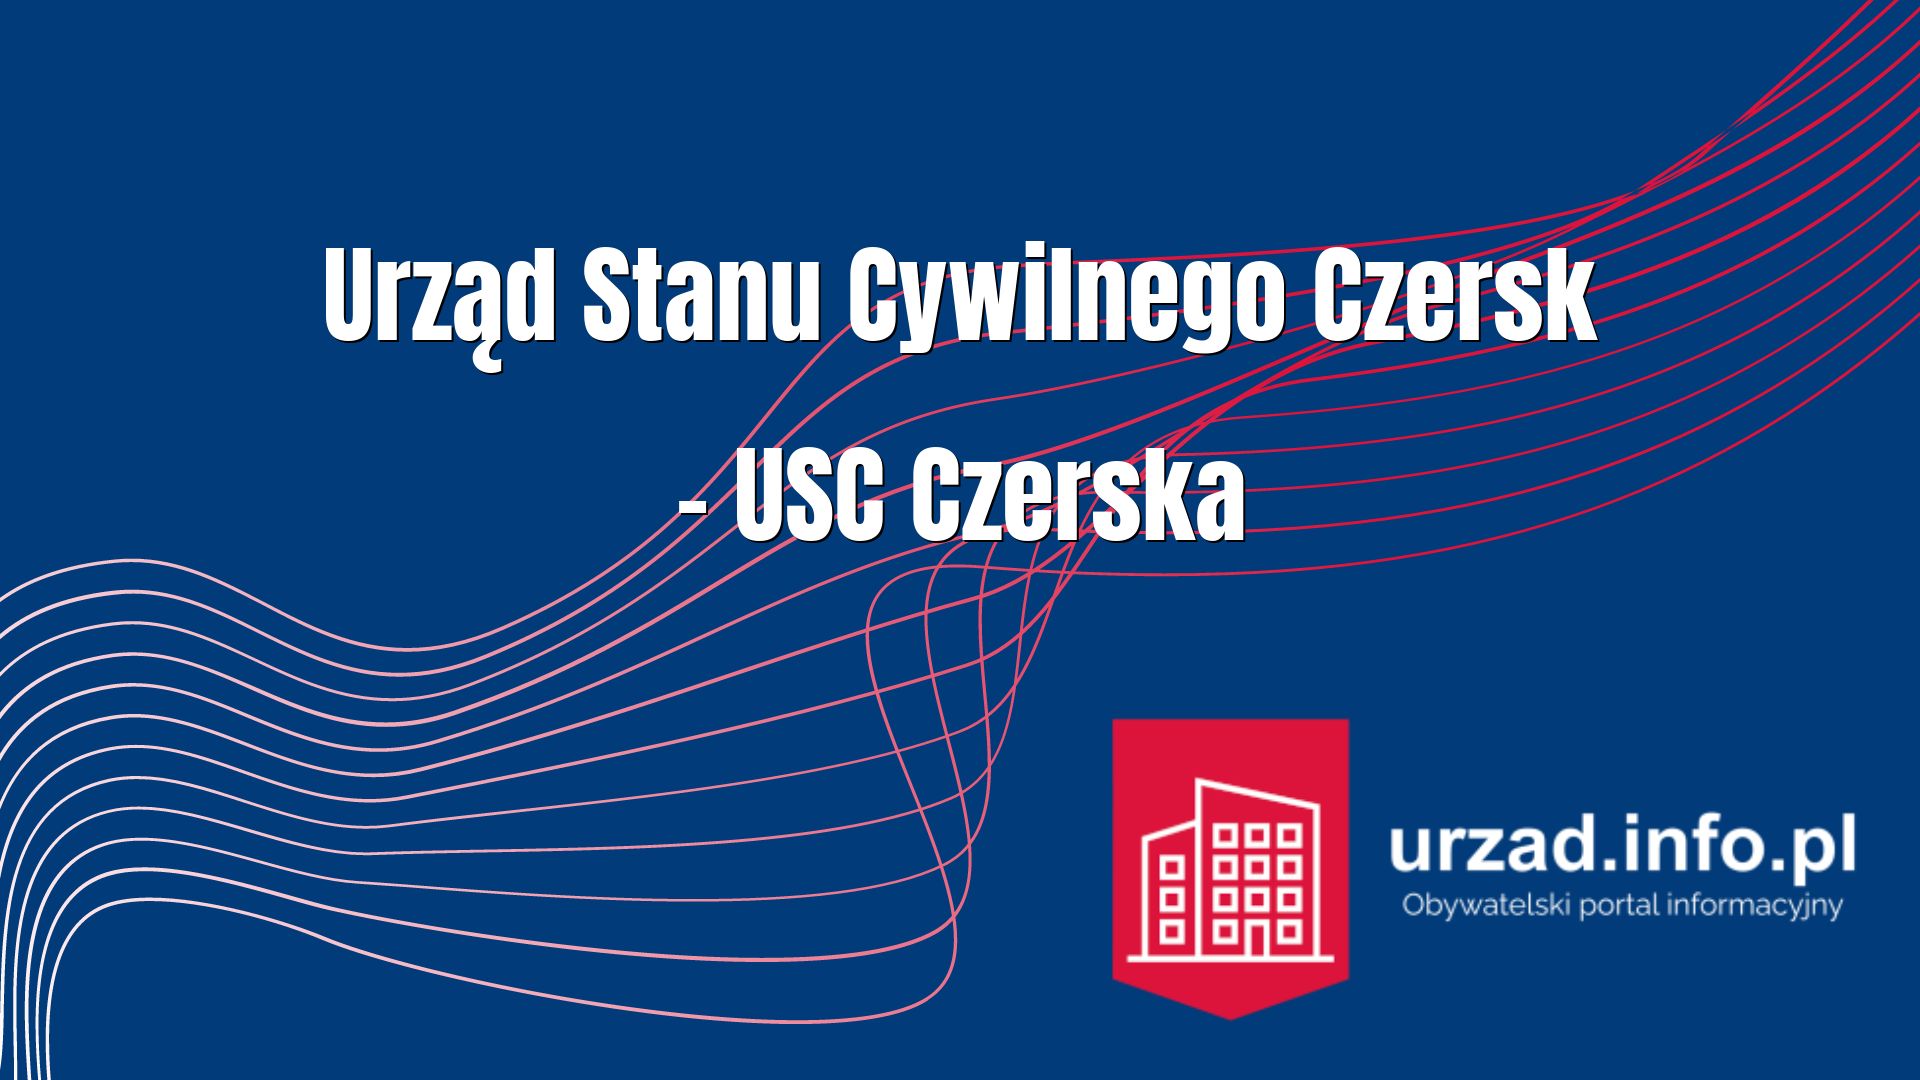 Urząd Stanu Cywilnego Czersk – USC Czerska